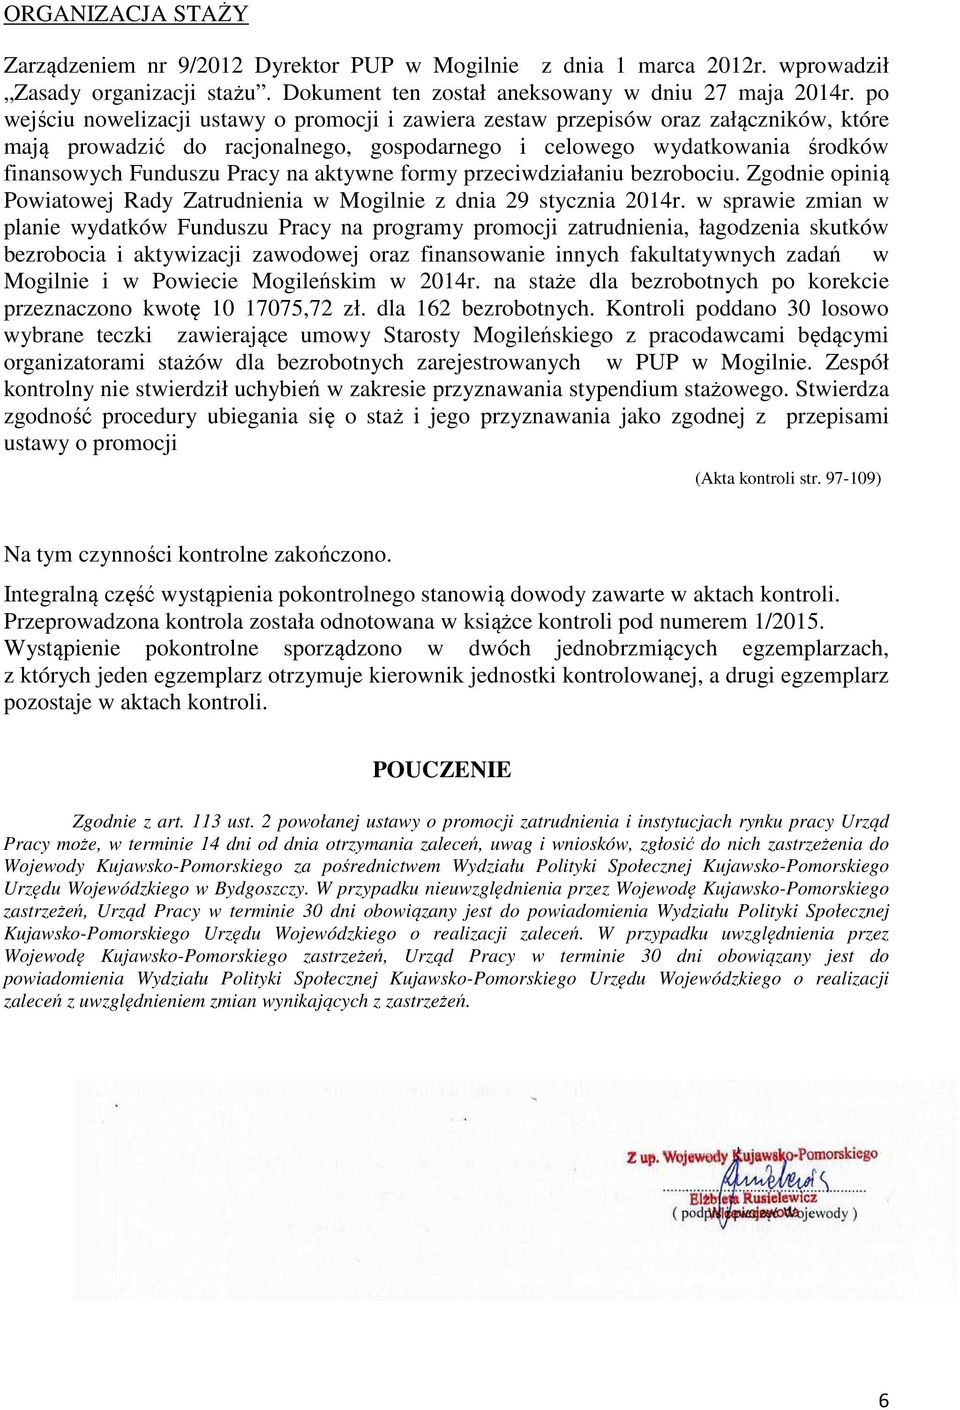 aktywne formy przeciwdziałaniu bezrobociu. Zgodnie opinią Powiatowej Rady Zatrudnienia w Mogilnie z dnia 29 stycznia 2014r.